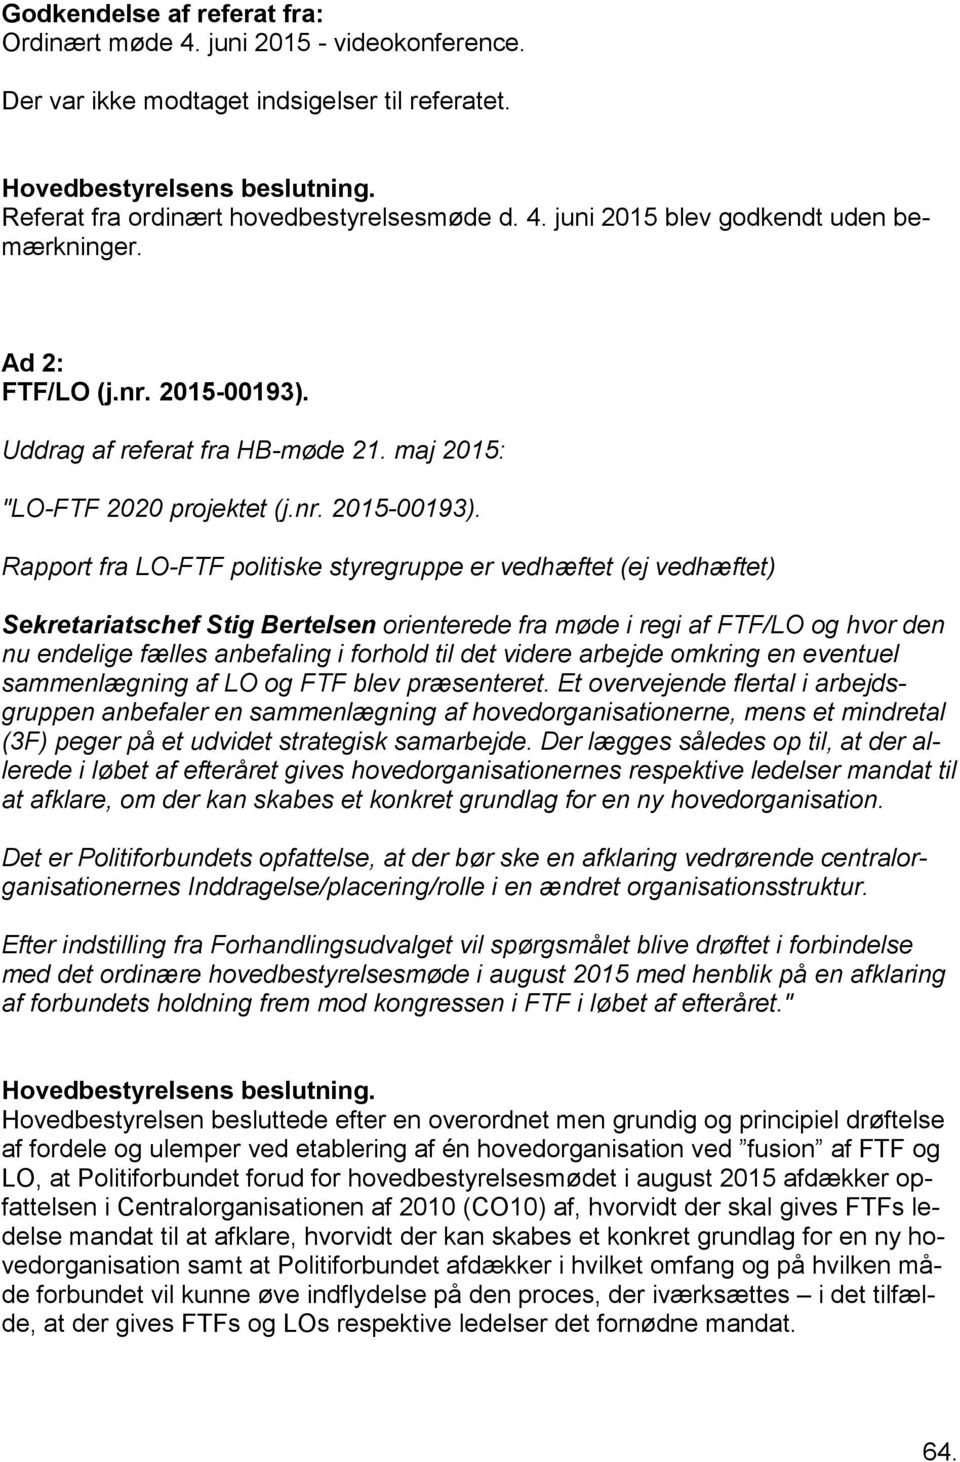 Uddrag af referat fra HB-møde 21. maj 2015: "LO-FTF 2020 projektet (j.nr. 2015-00193).